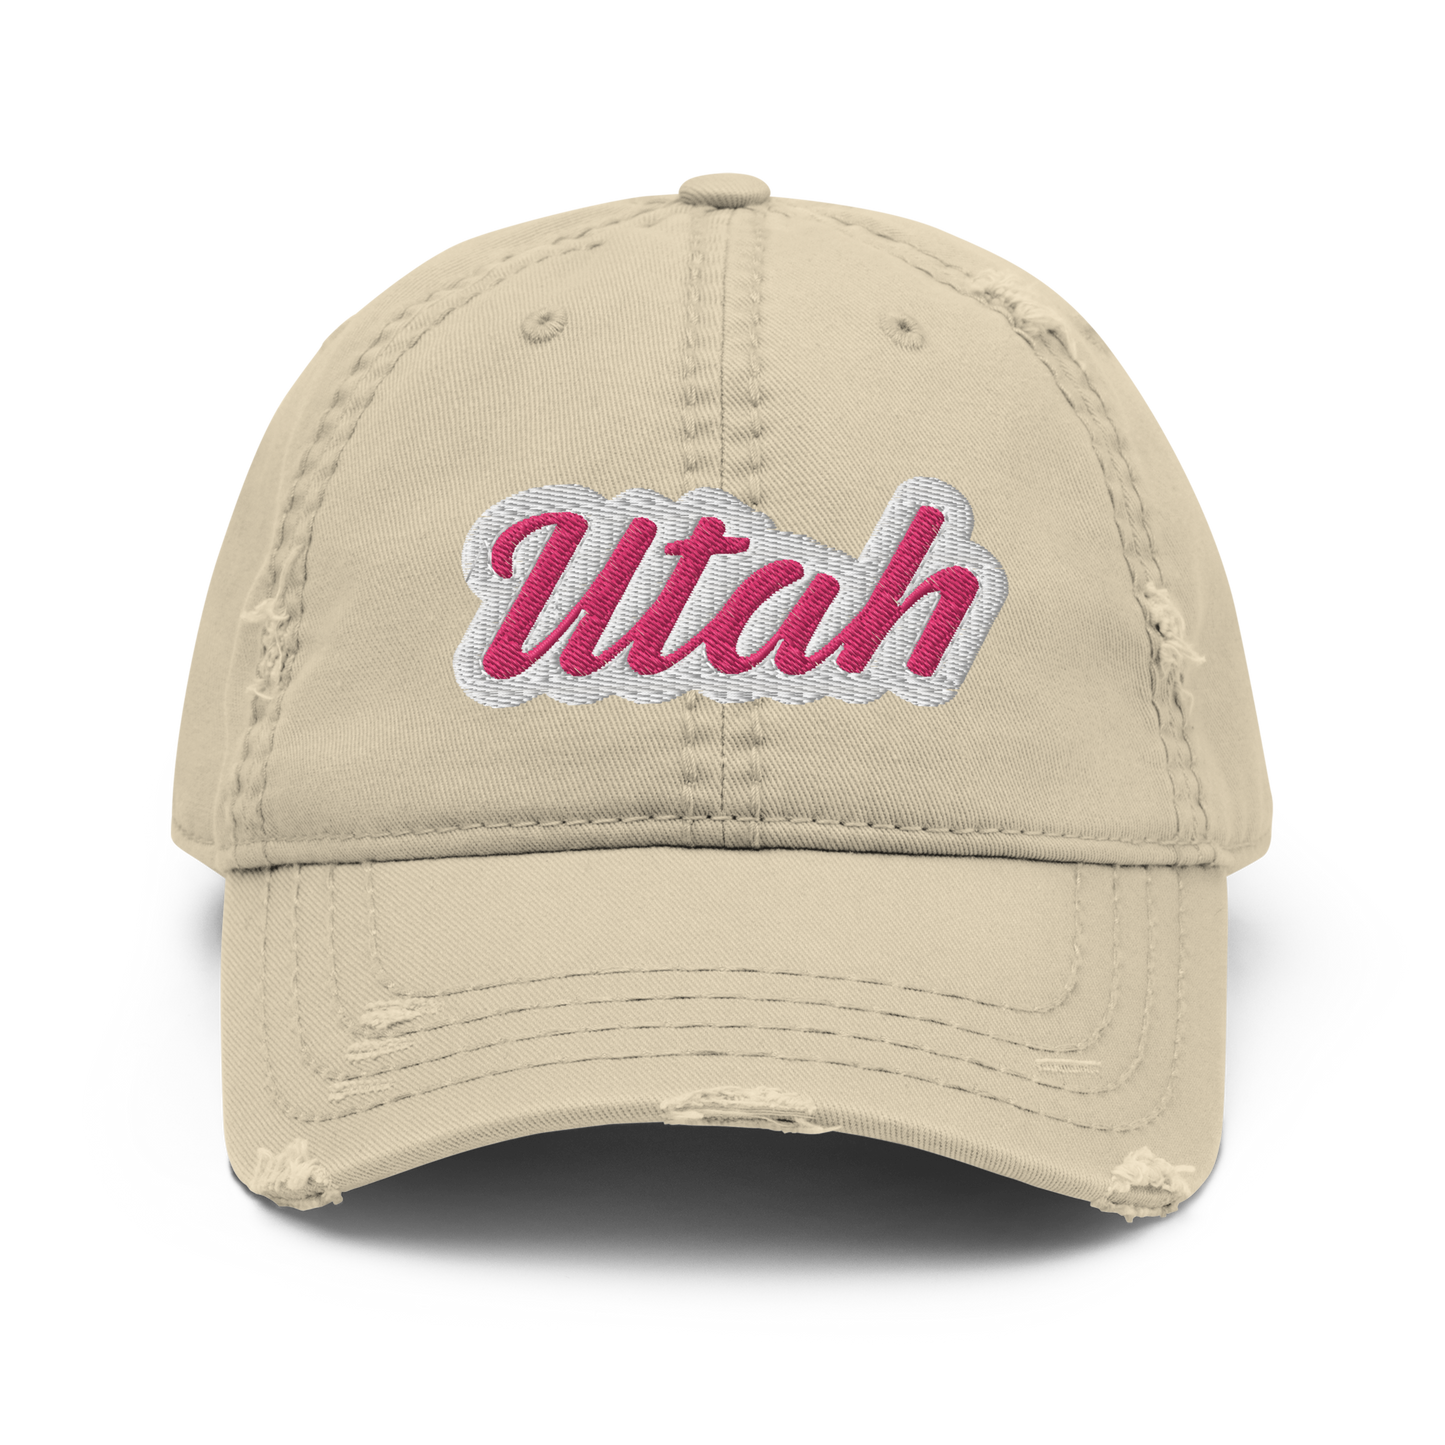 Utah Distressed Hat